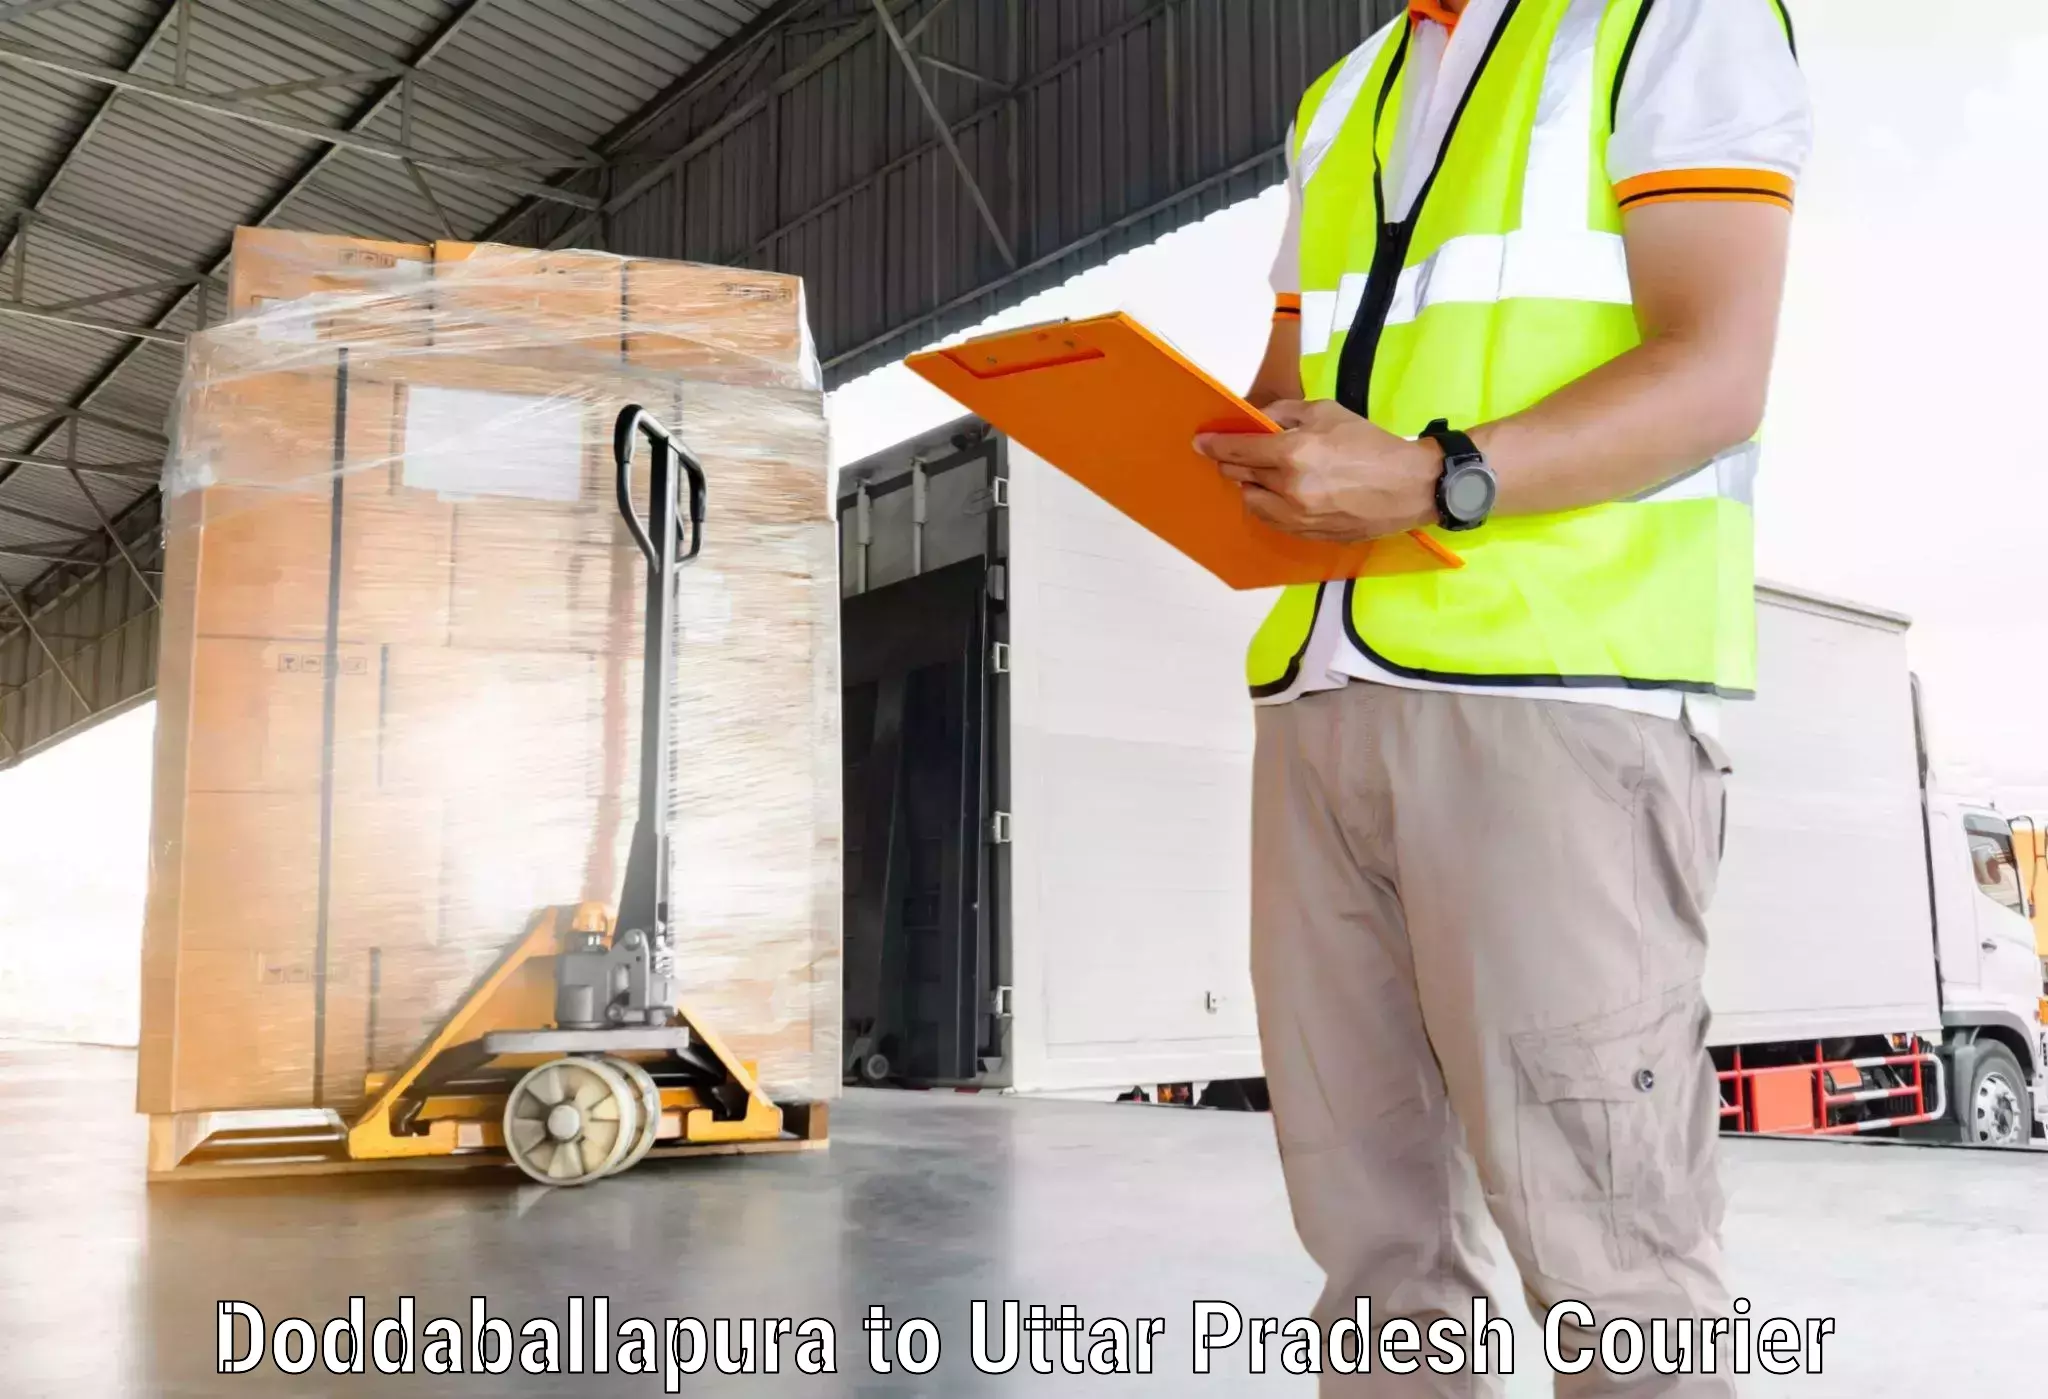 Optimized shipping routes Doddaballapura to Dataganj